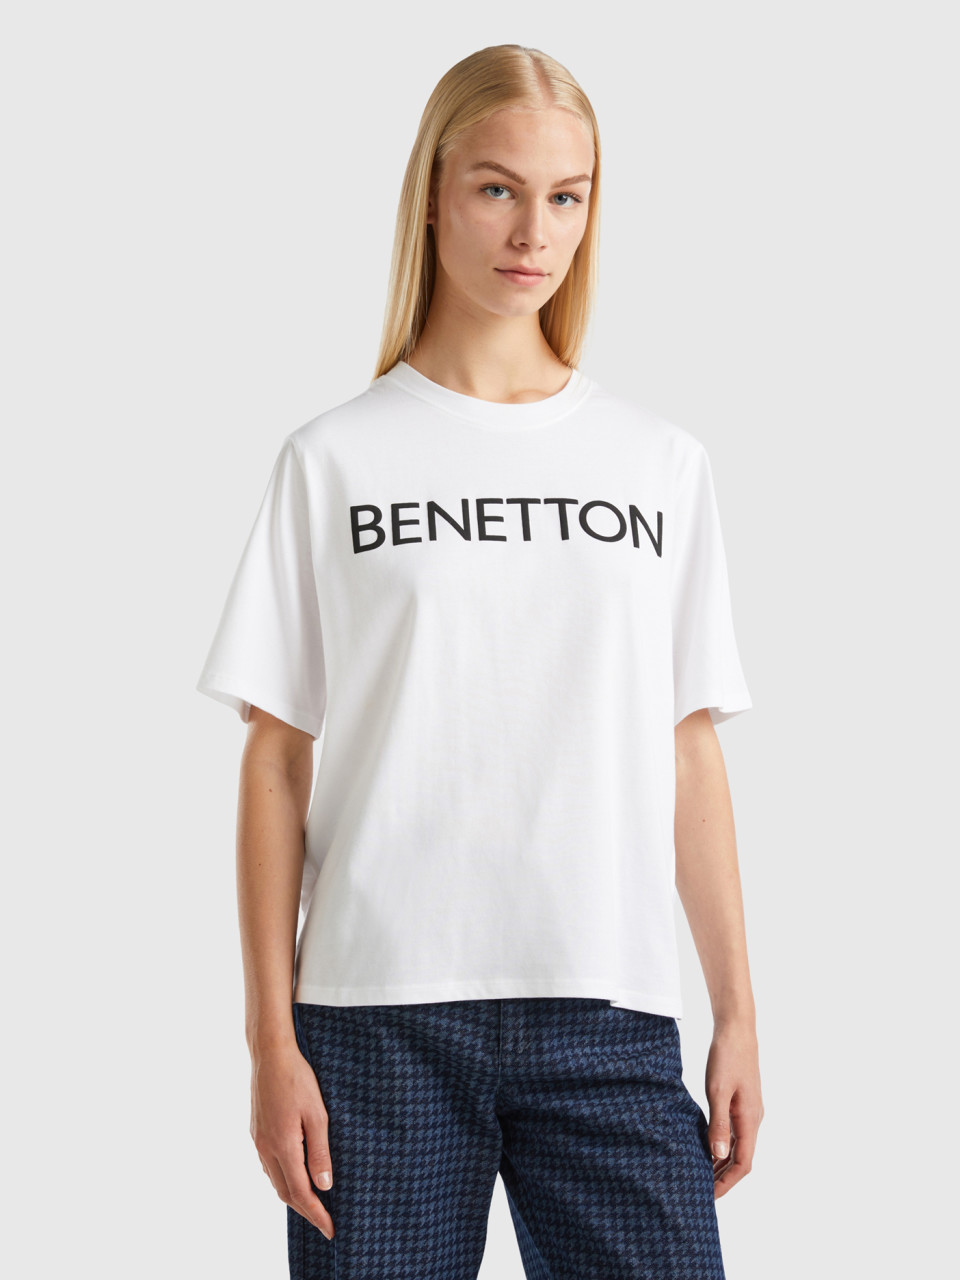 Benetton, T-shirt With Logo Text, White, Women